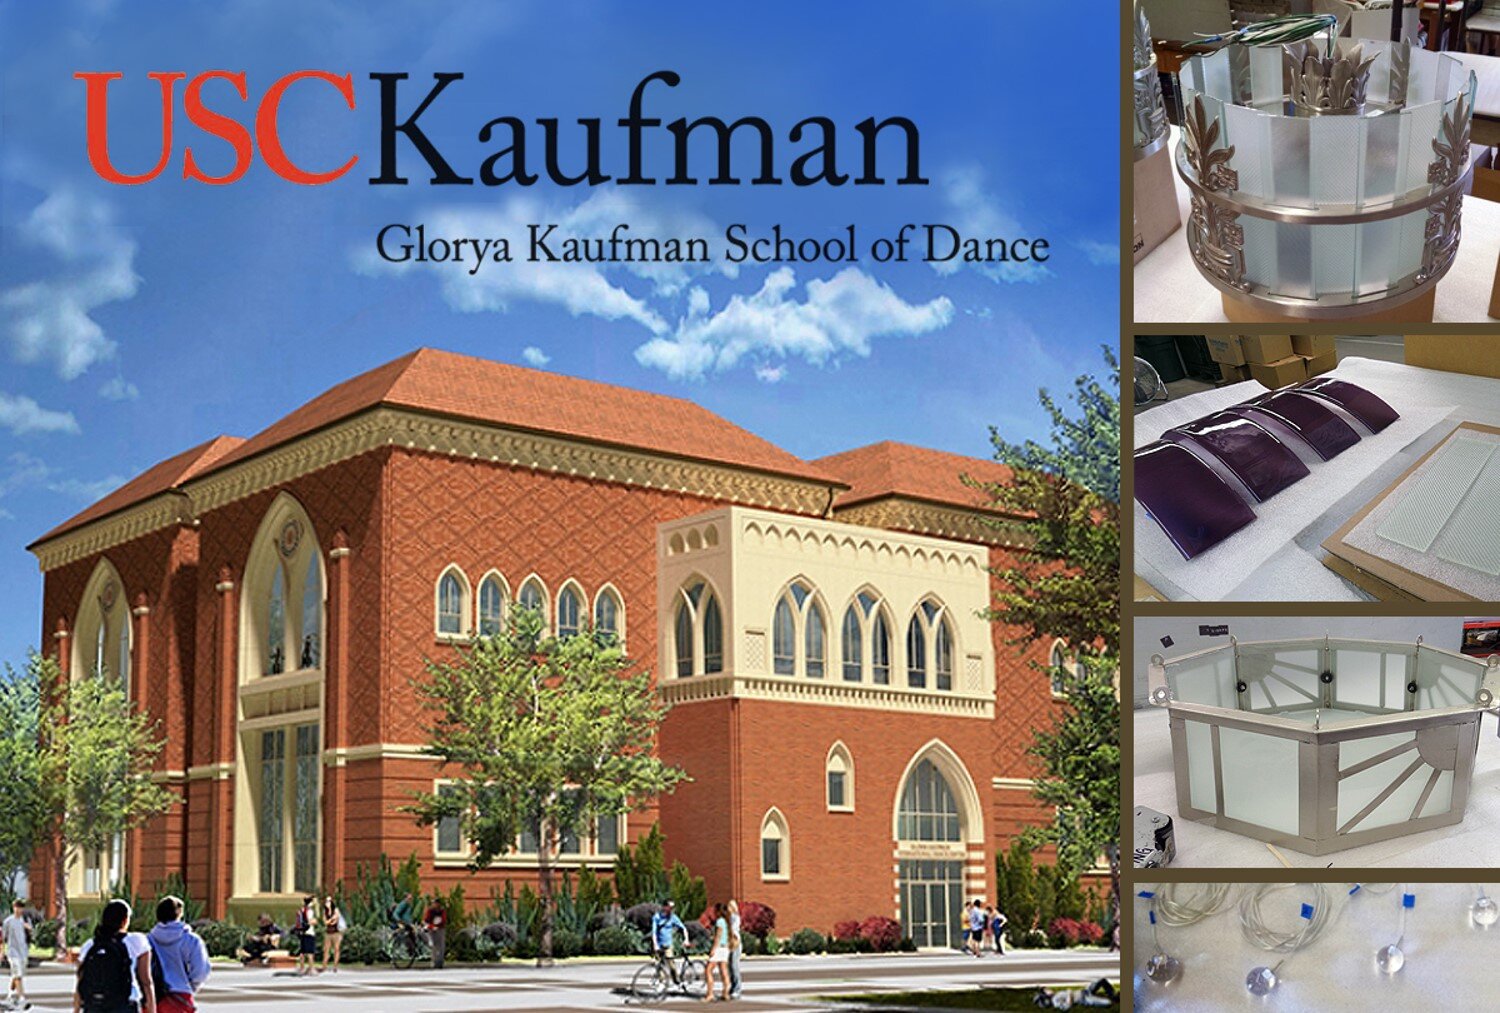 usc.kaufman.school.of.dance.pg1.jpg